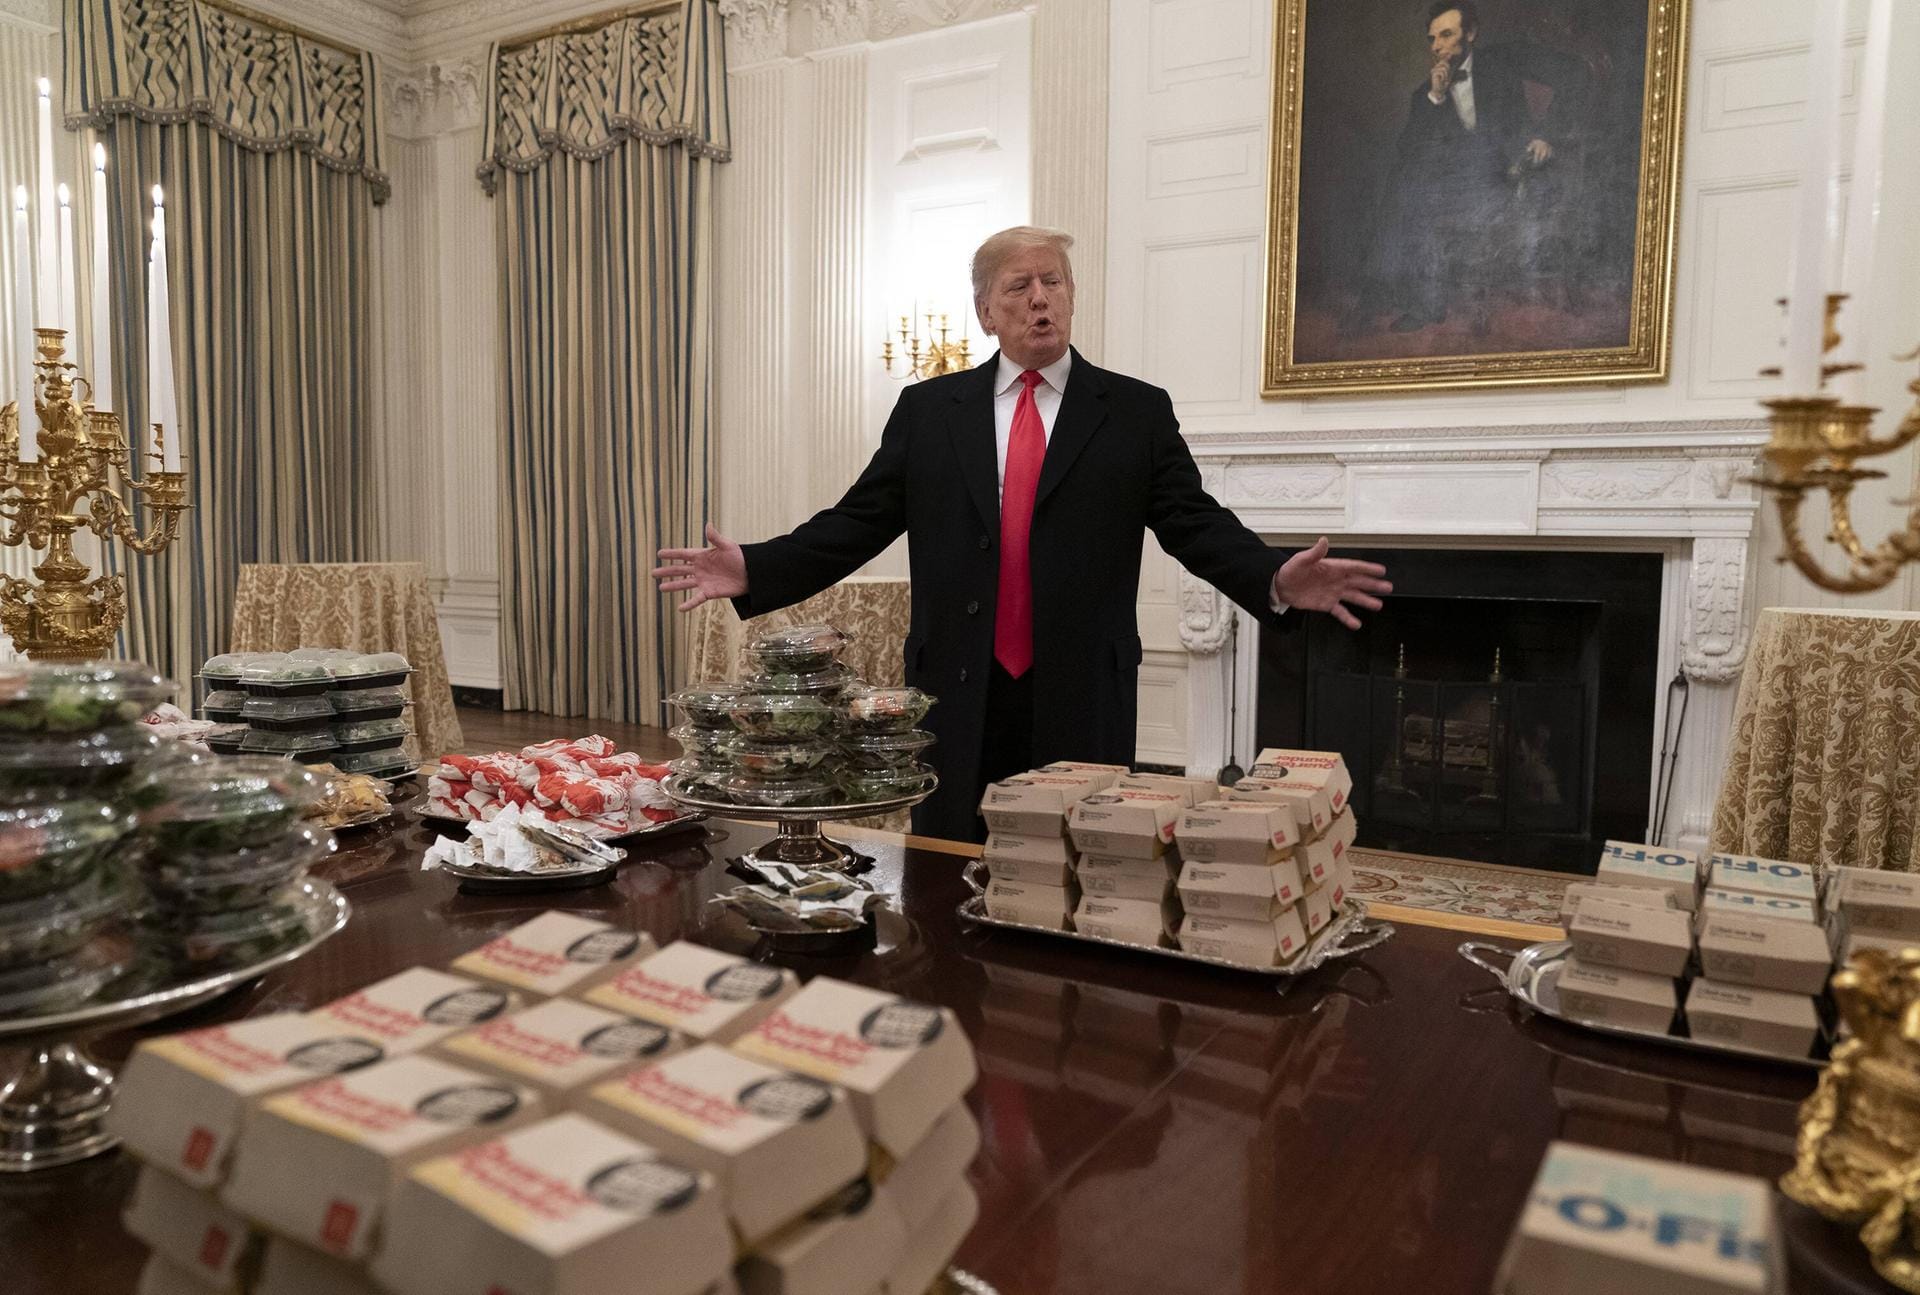 Am 14. Januar 2019 hält Trump den traditionellen Empfang des Weißen Hauses für die Gewinner der College-Football-Championship ab. Wegen des Shutdowns im US-Haushalt musste man auf Fast-Food zurückgreifen. Trump selbst schien das zu gefallen: Er isst ohnehin fast täglich Fastfood.